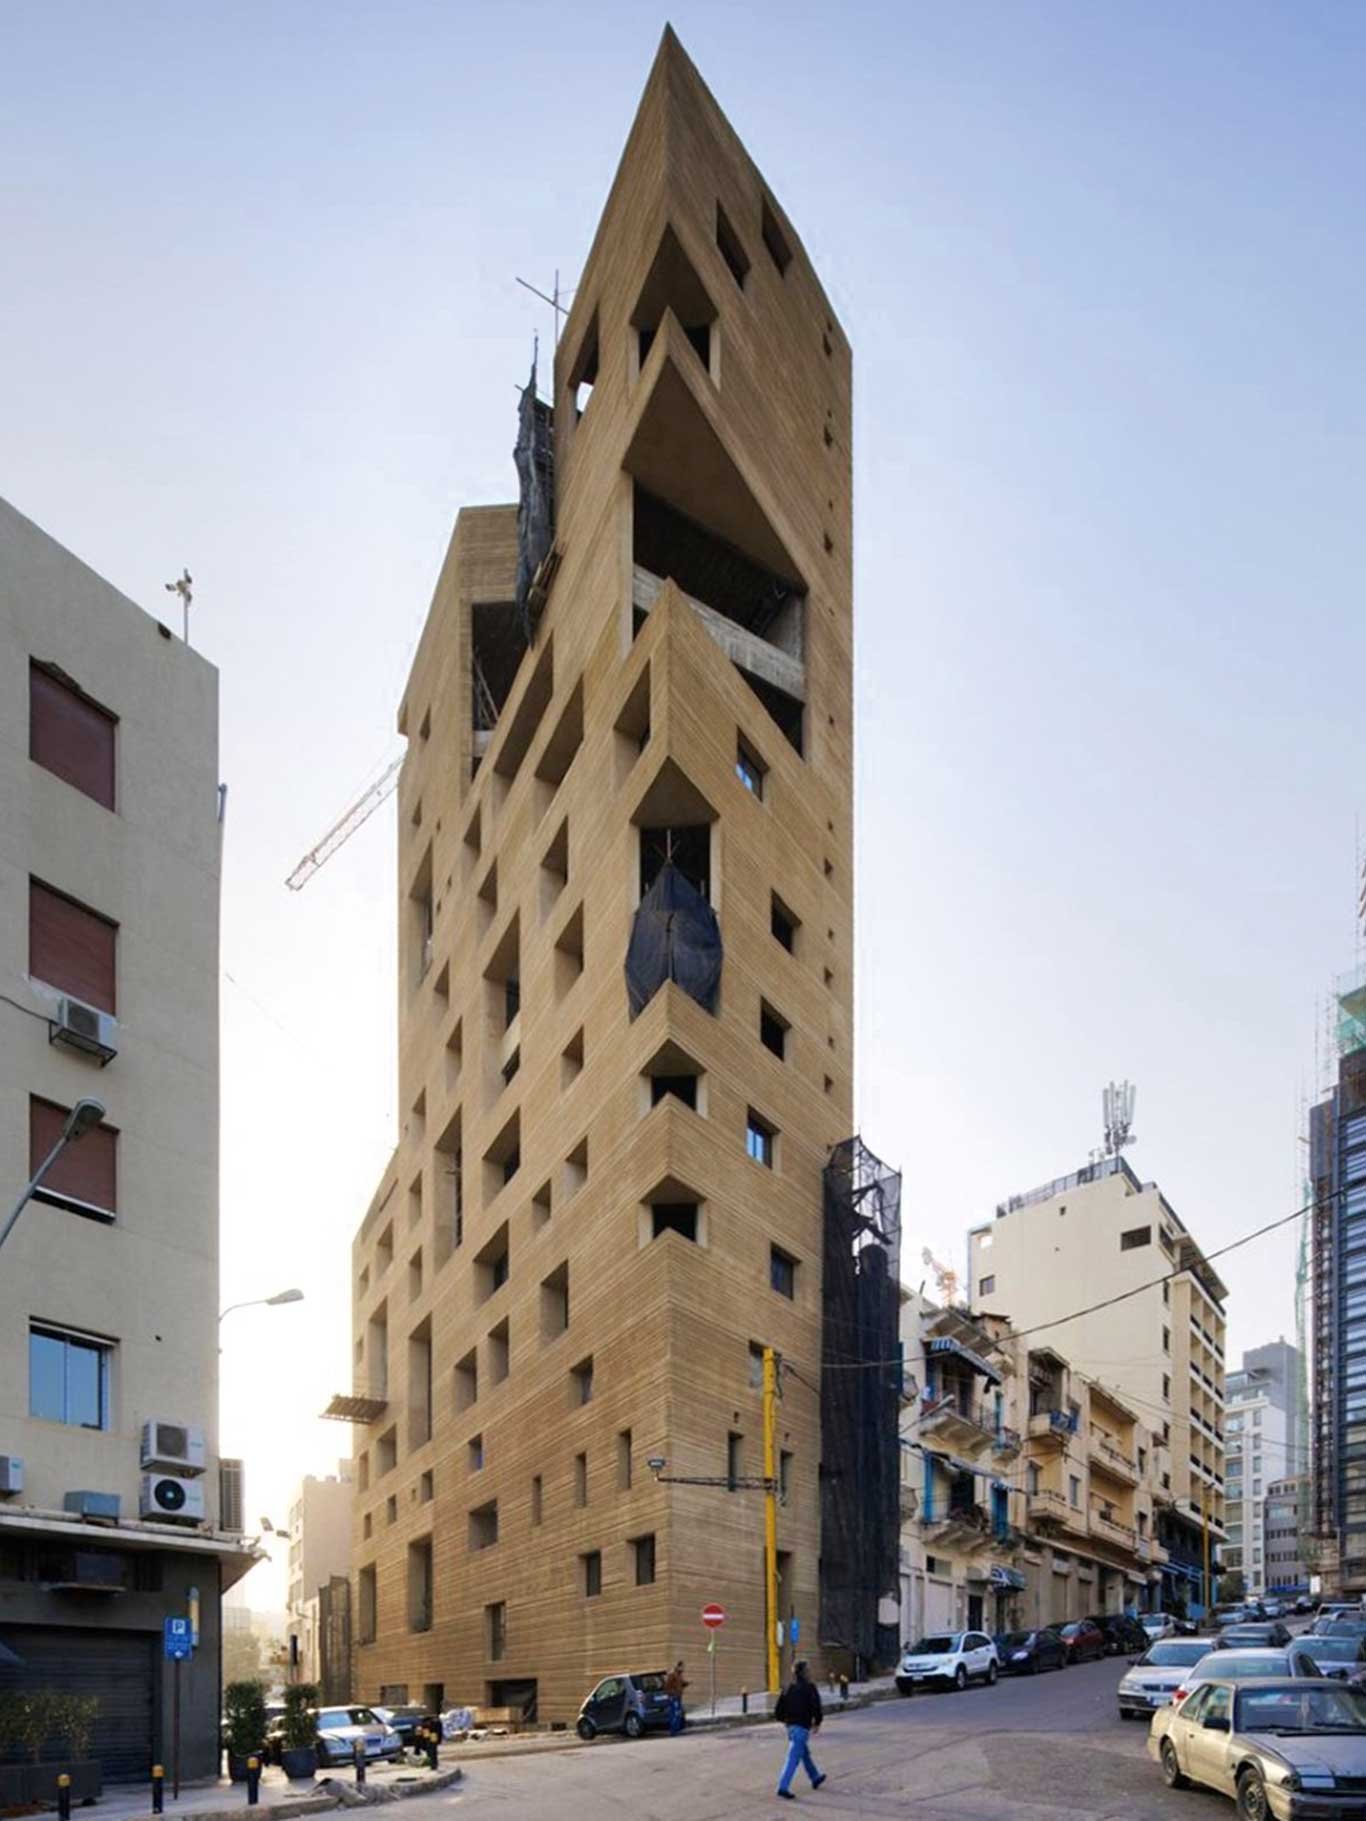 Die Pariser Architektin Lina Ghotmeh verkleidete ihr Beton-Wohnhochhaus in der libanesischen Hauptstadt Beirut mit einer Schicht aus gebürstetem Lehm und Erde. Das Gebäude erhält auf diese Weise eine überirdische und zugleich unterirdische Schönheit. linaghotmeh.com